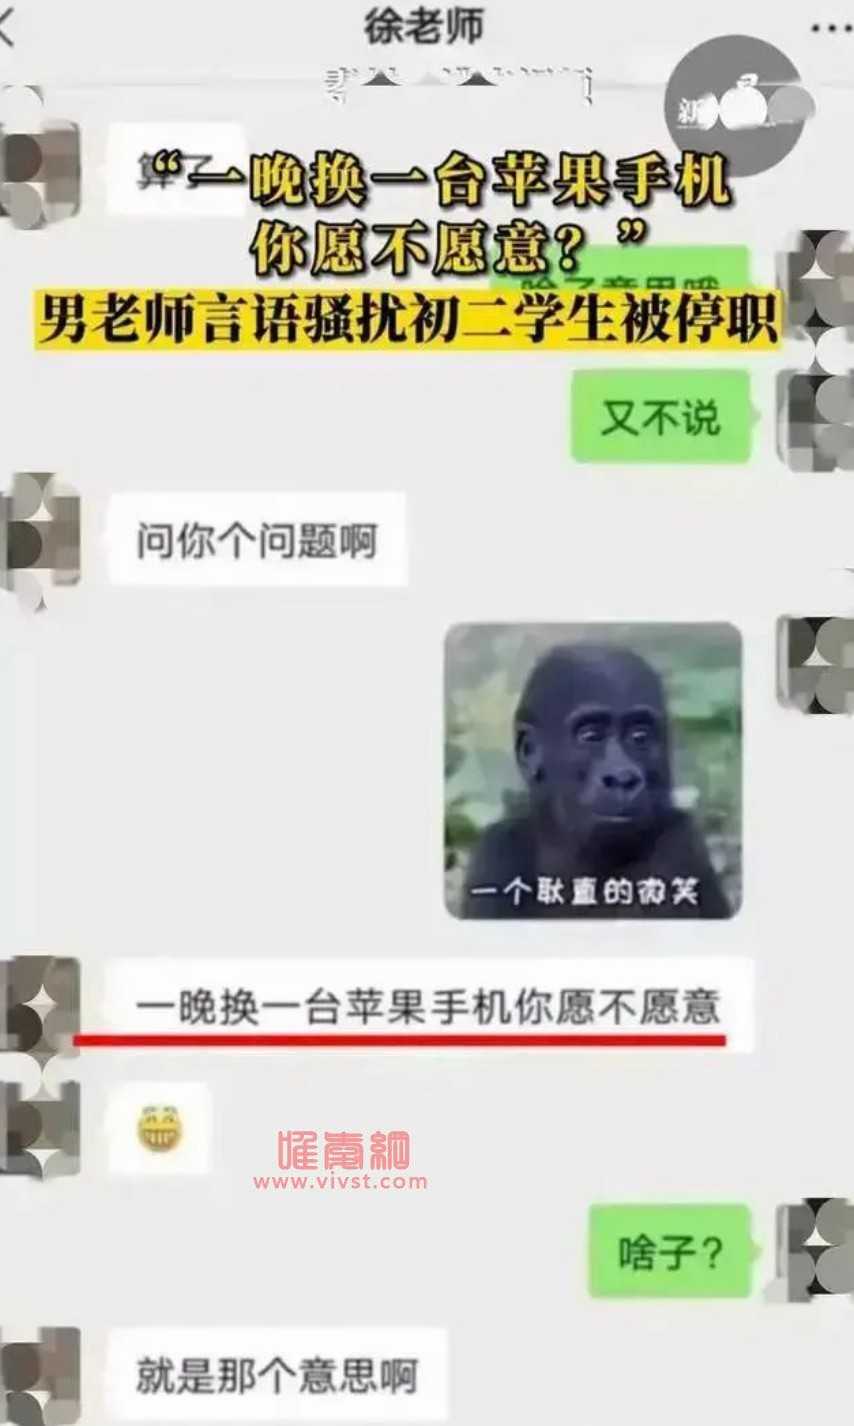 四川泸州初中体育男老师要用"一部苹果手机换女学生一夜"?官方通报来了!